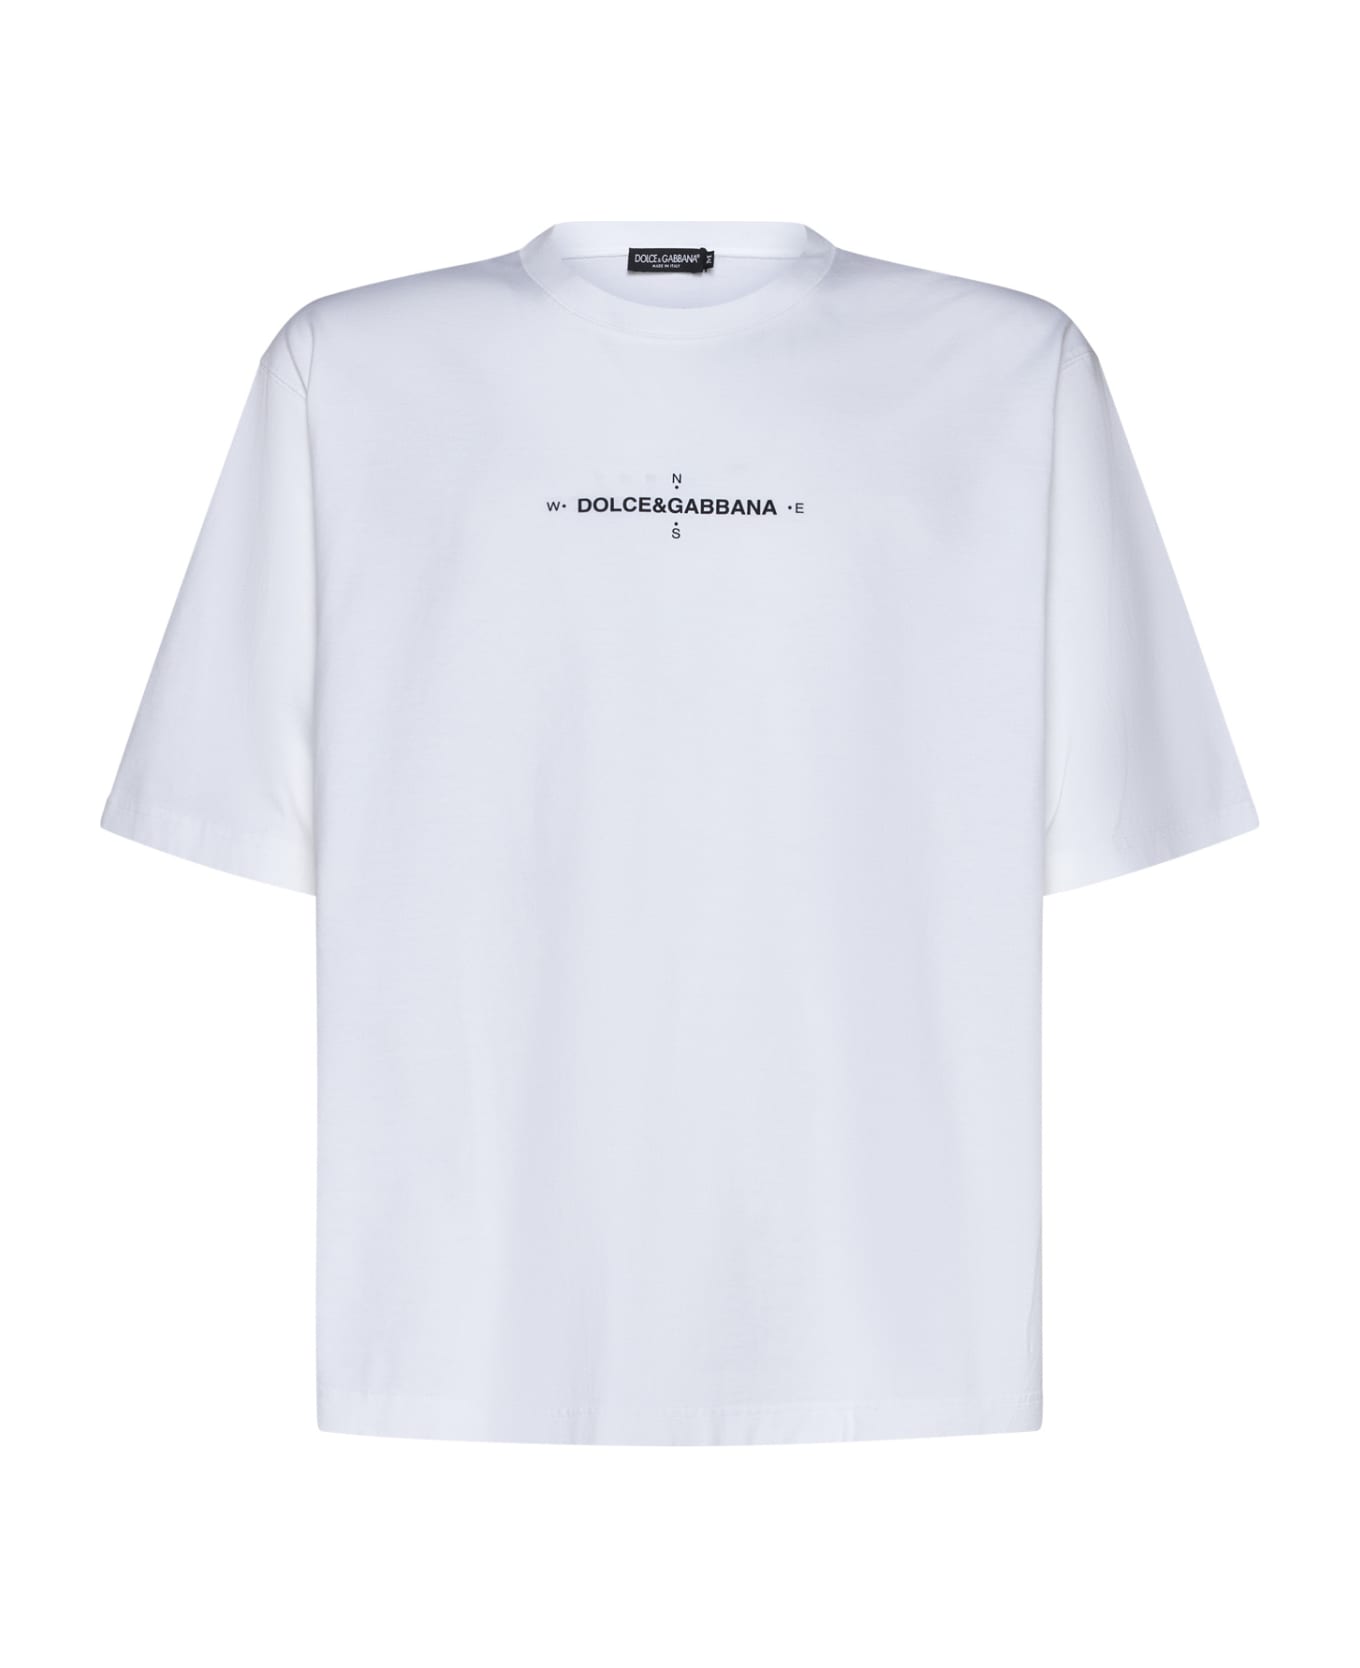 Dolce & Gabbana Marina Print T-shirt - Bianco otticco